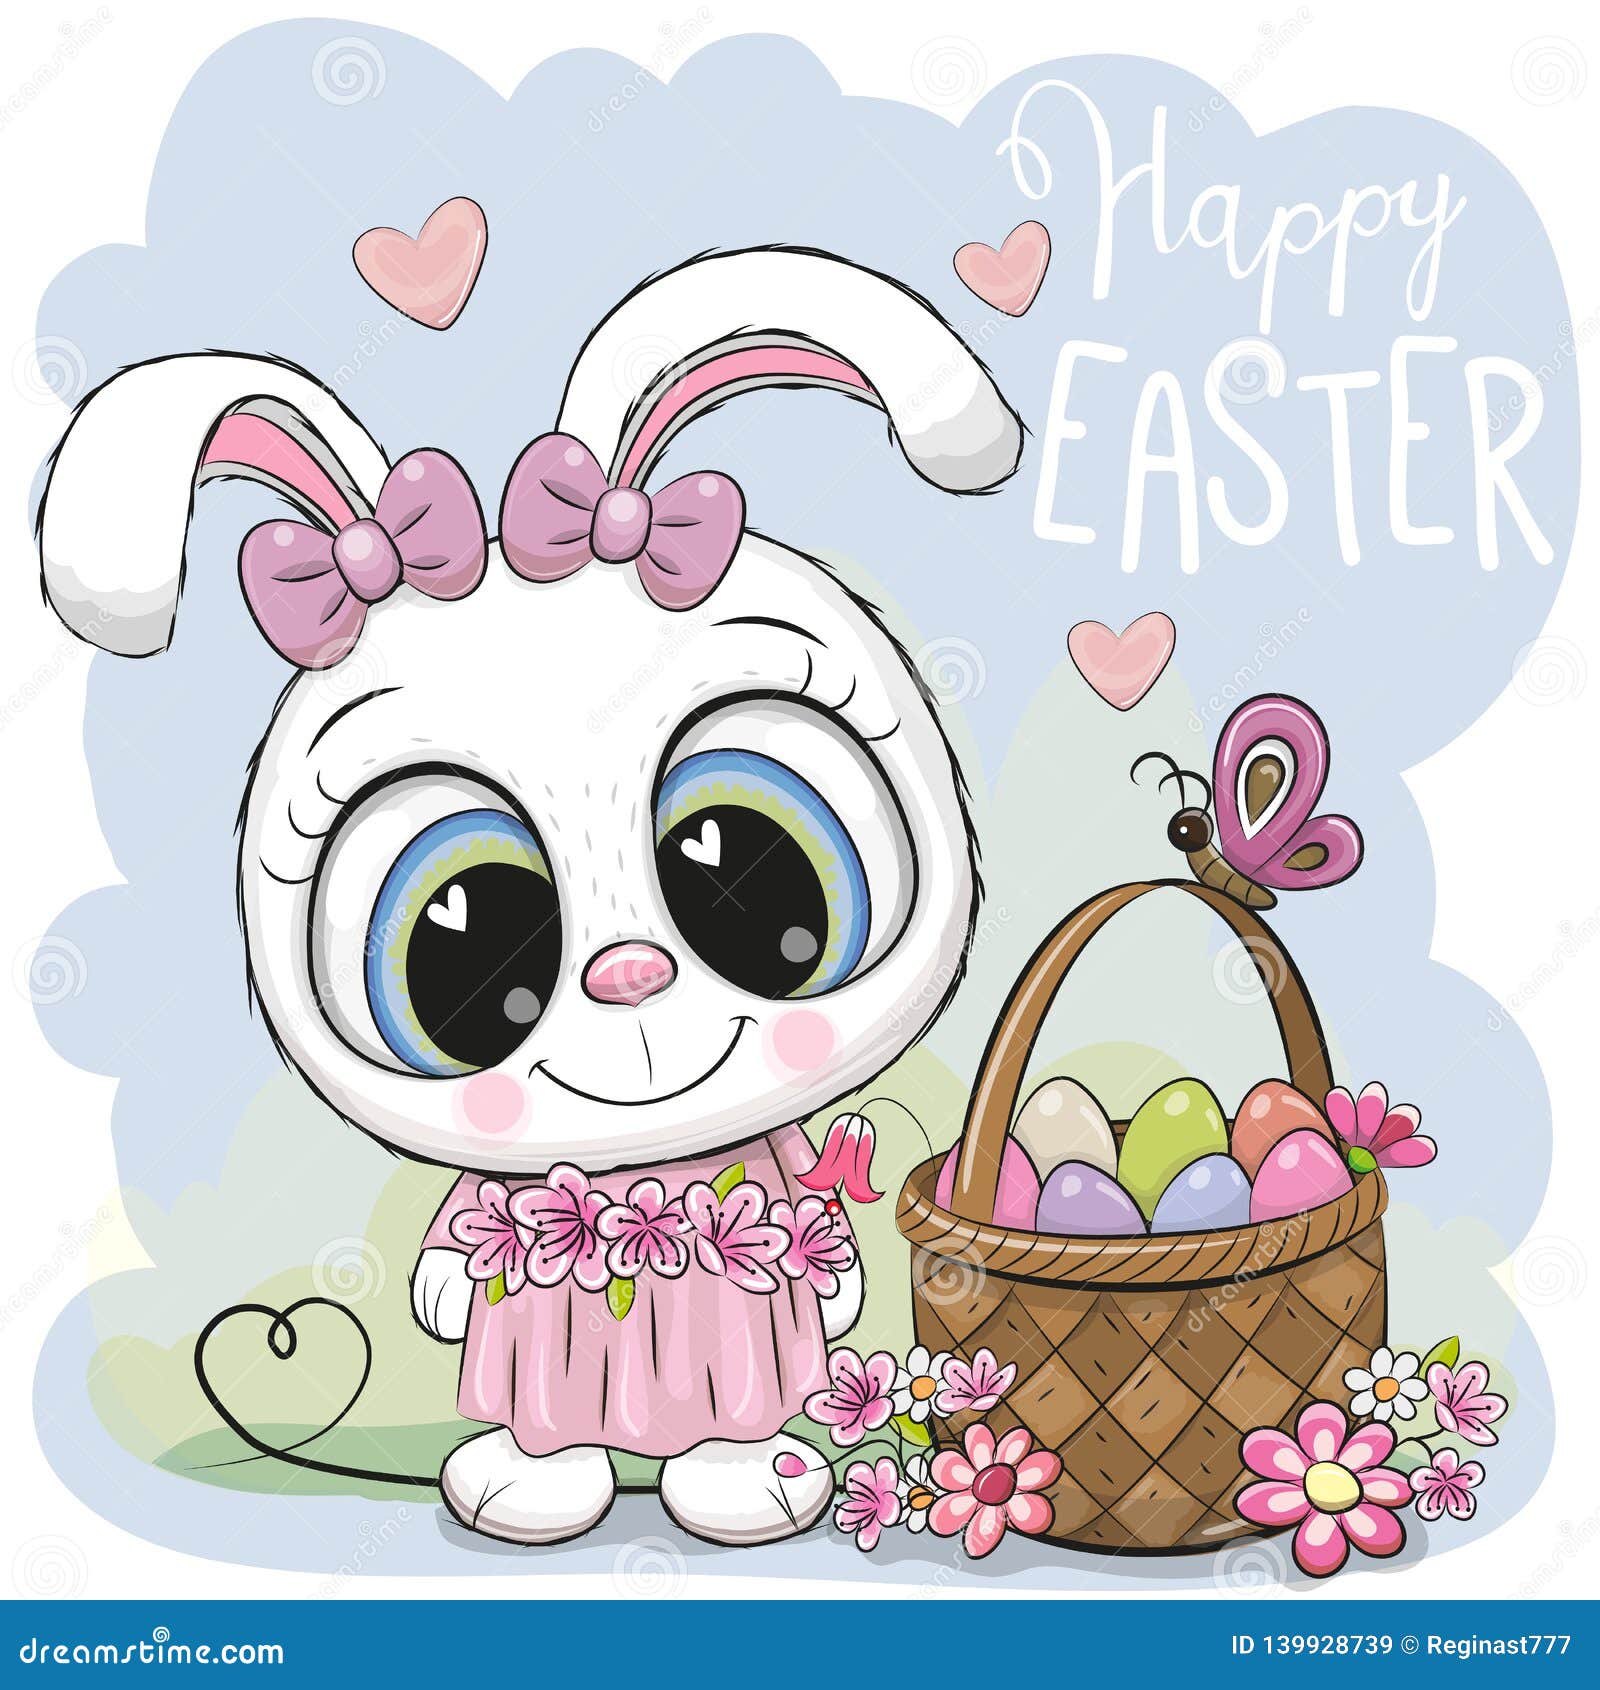 Cartoon Easter Basket Stock Illustrations – 24,139 Cartoon Easter Basket Stock Illustrations, Vectors & Clipart - Dreamstime